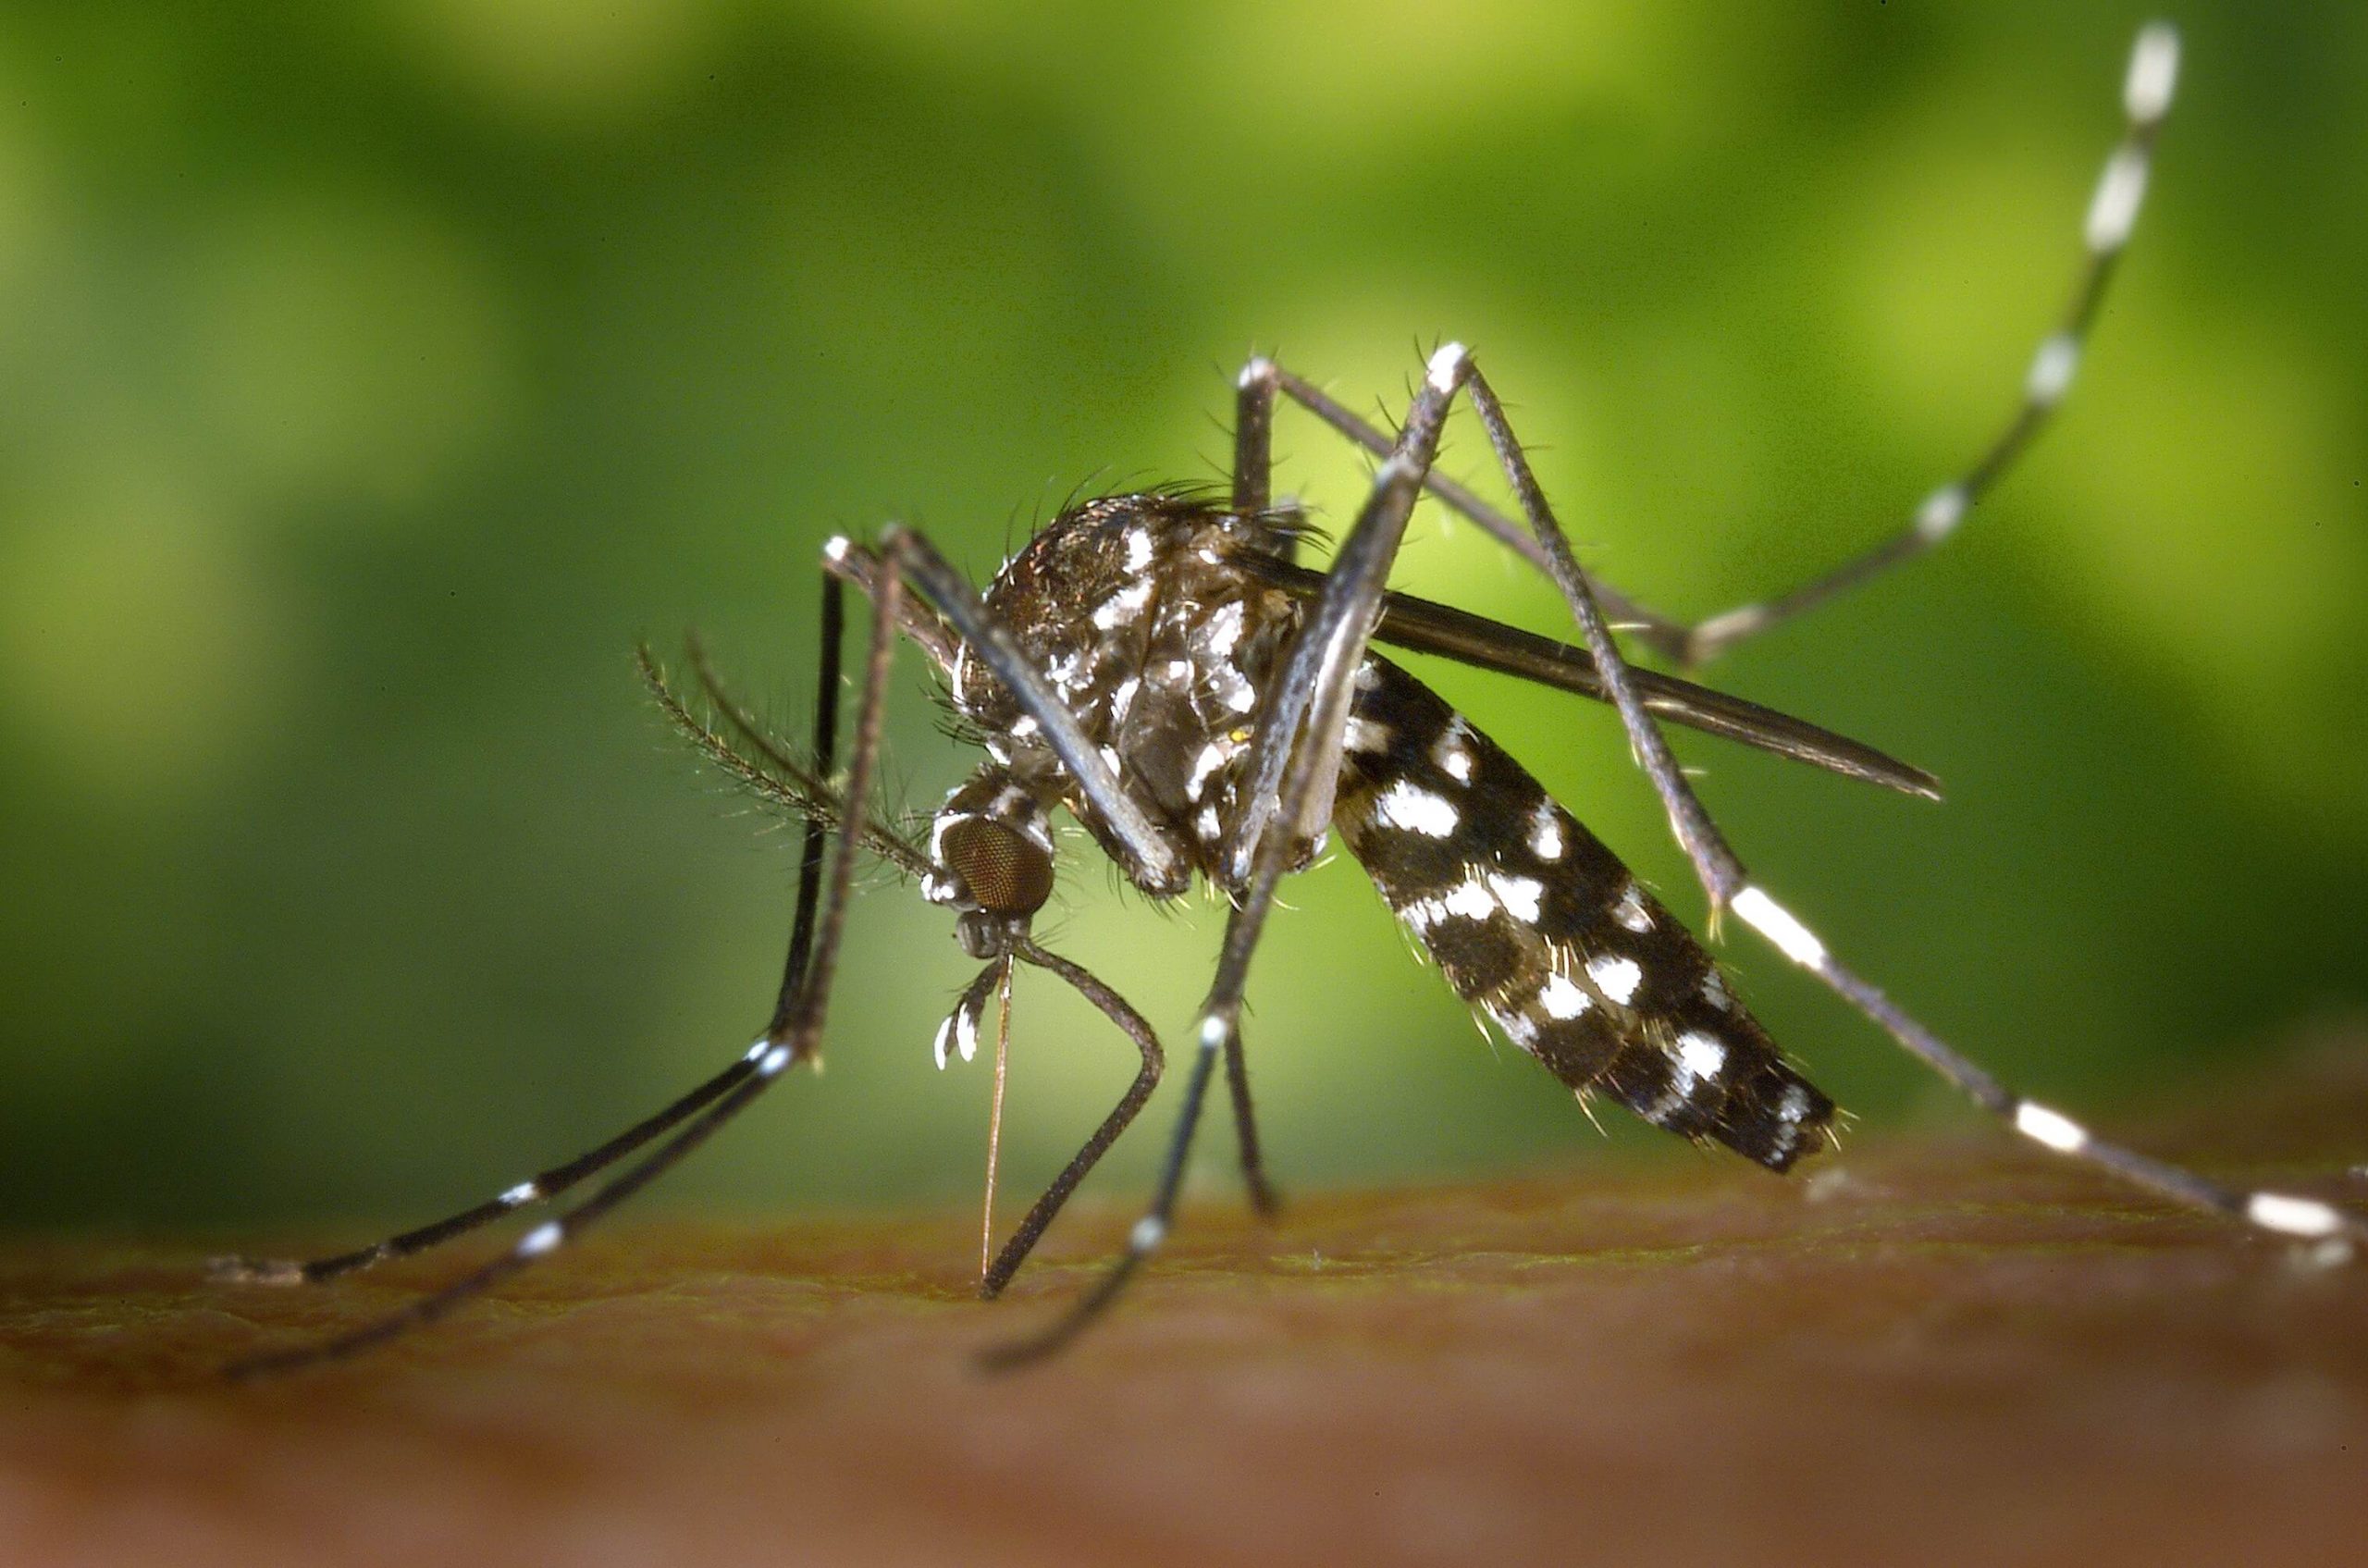 Mosquito Control – Amazon Jack